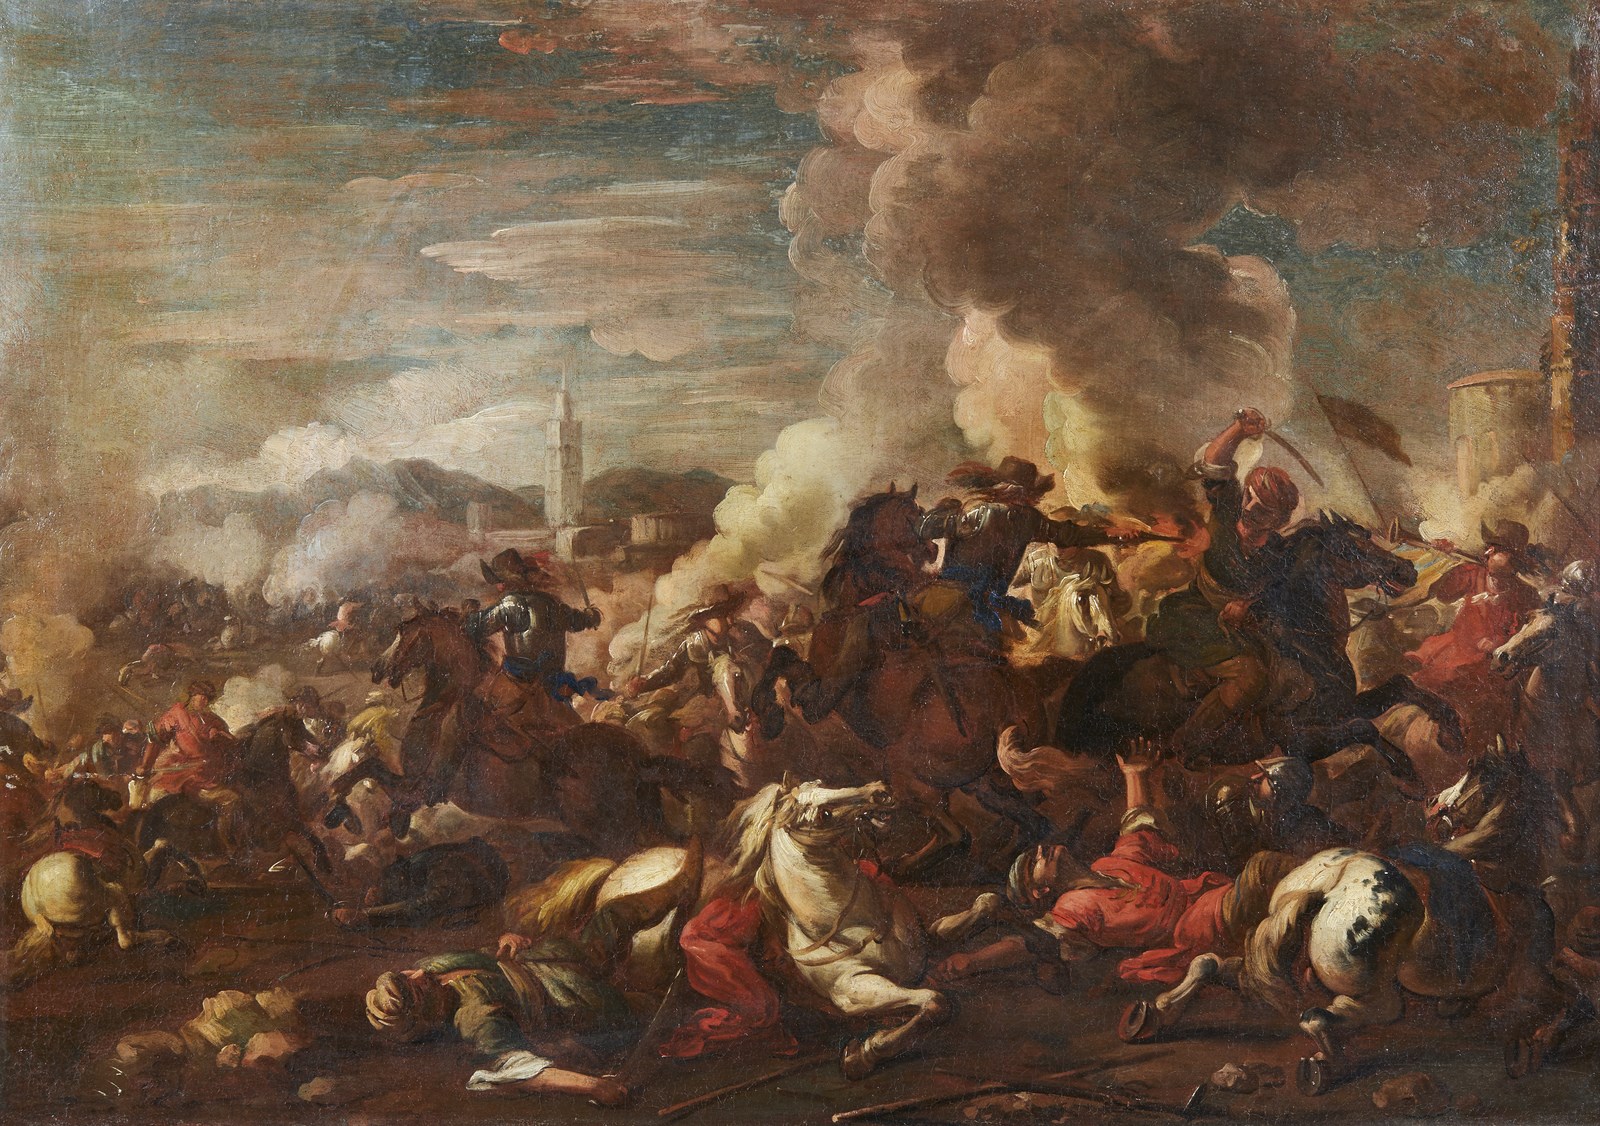 Battaglia tra cavalieri turchi e cristiani (Francesco  Monti Detto Il Brescianino Delle Battaglie)